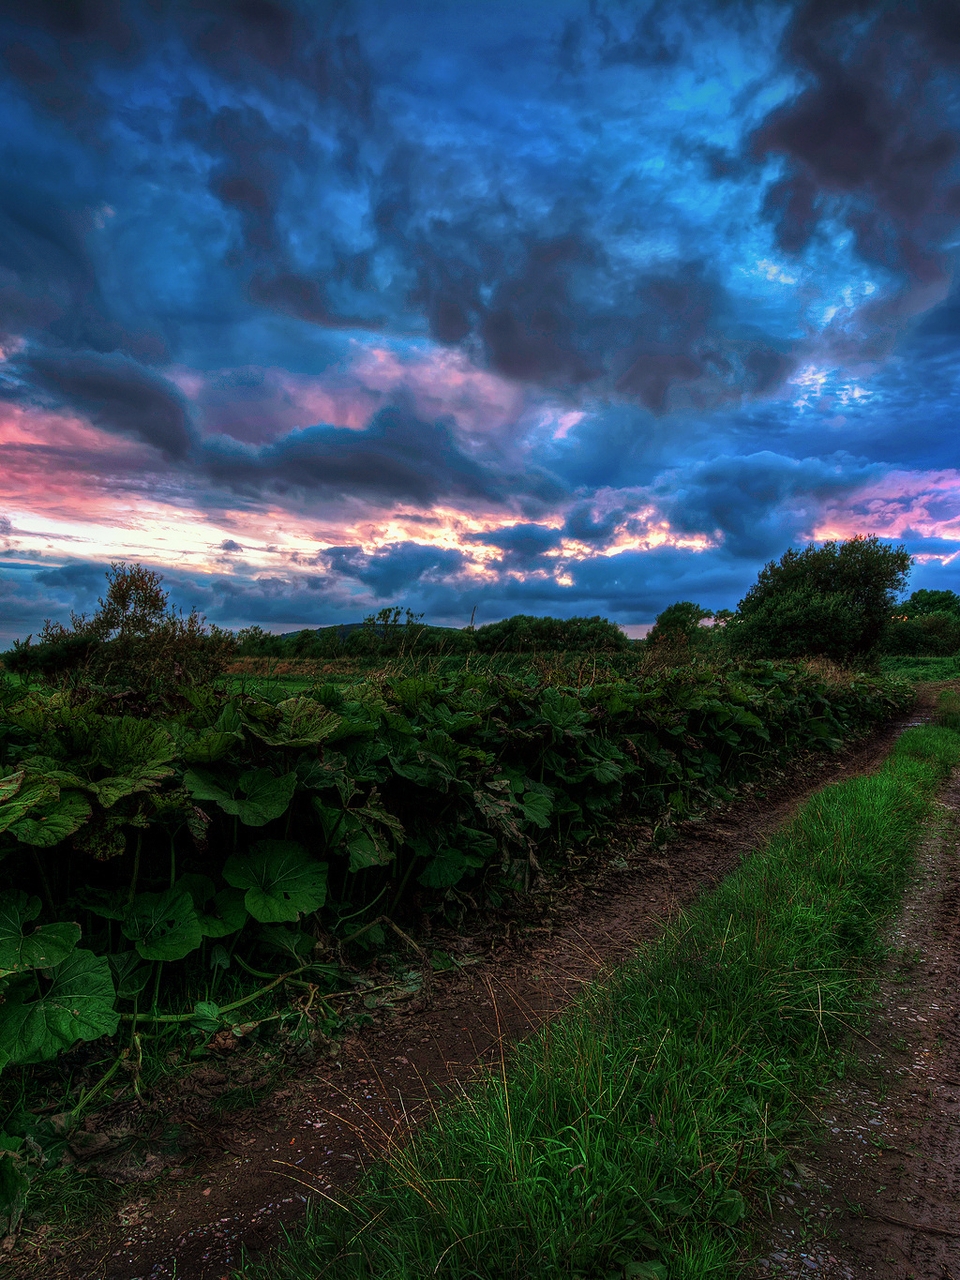 Картинка: Дорога, трава, зелень, растение, небо, облака, тучи, закат